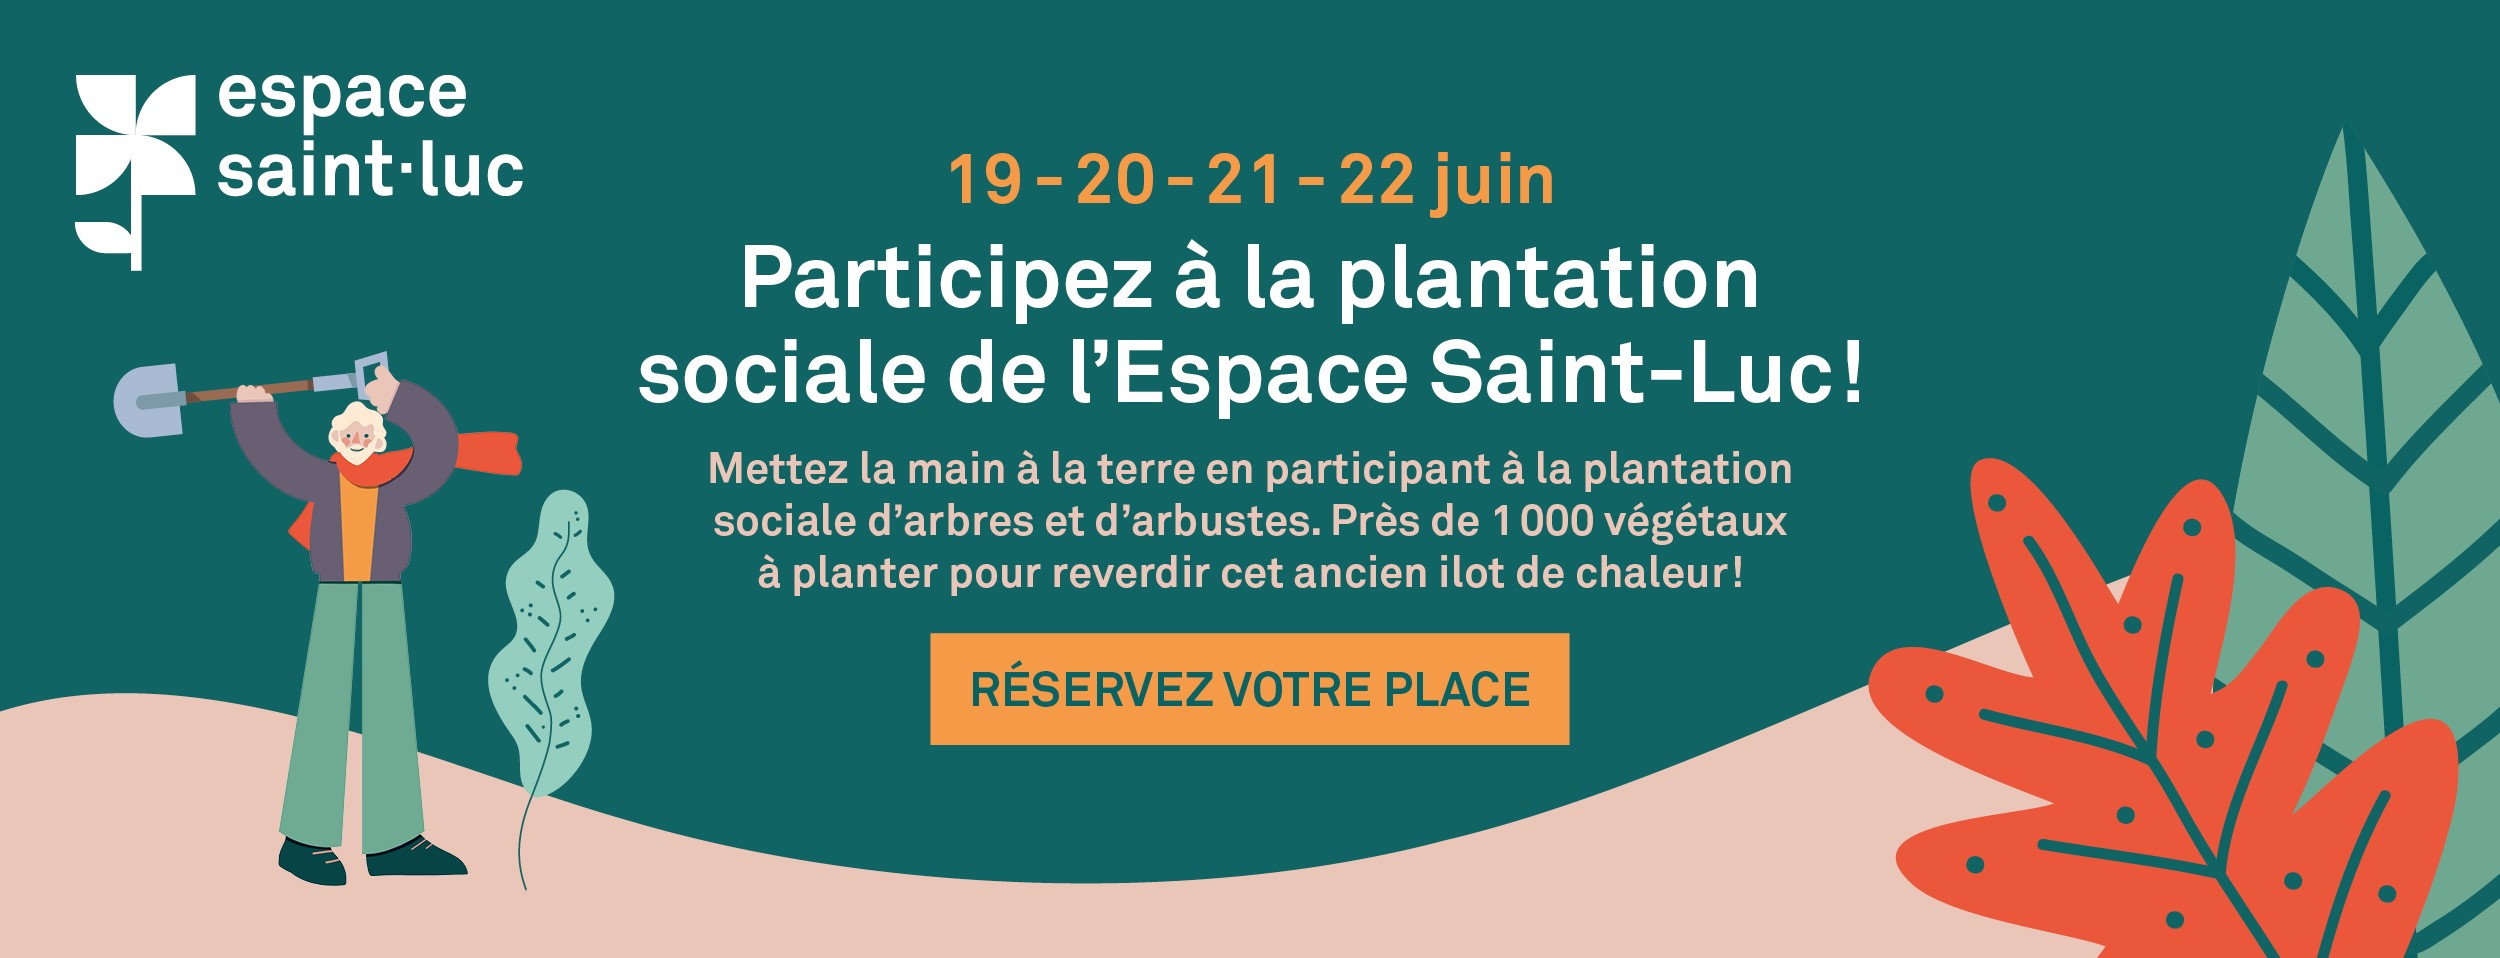 Communiqué - Espace Saint-Luc | La population invitée à participer à la plantation de 1 000 végétaux!